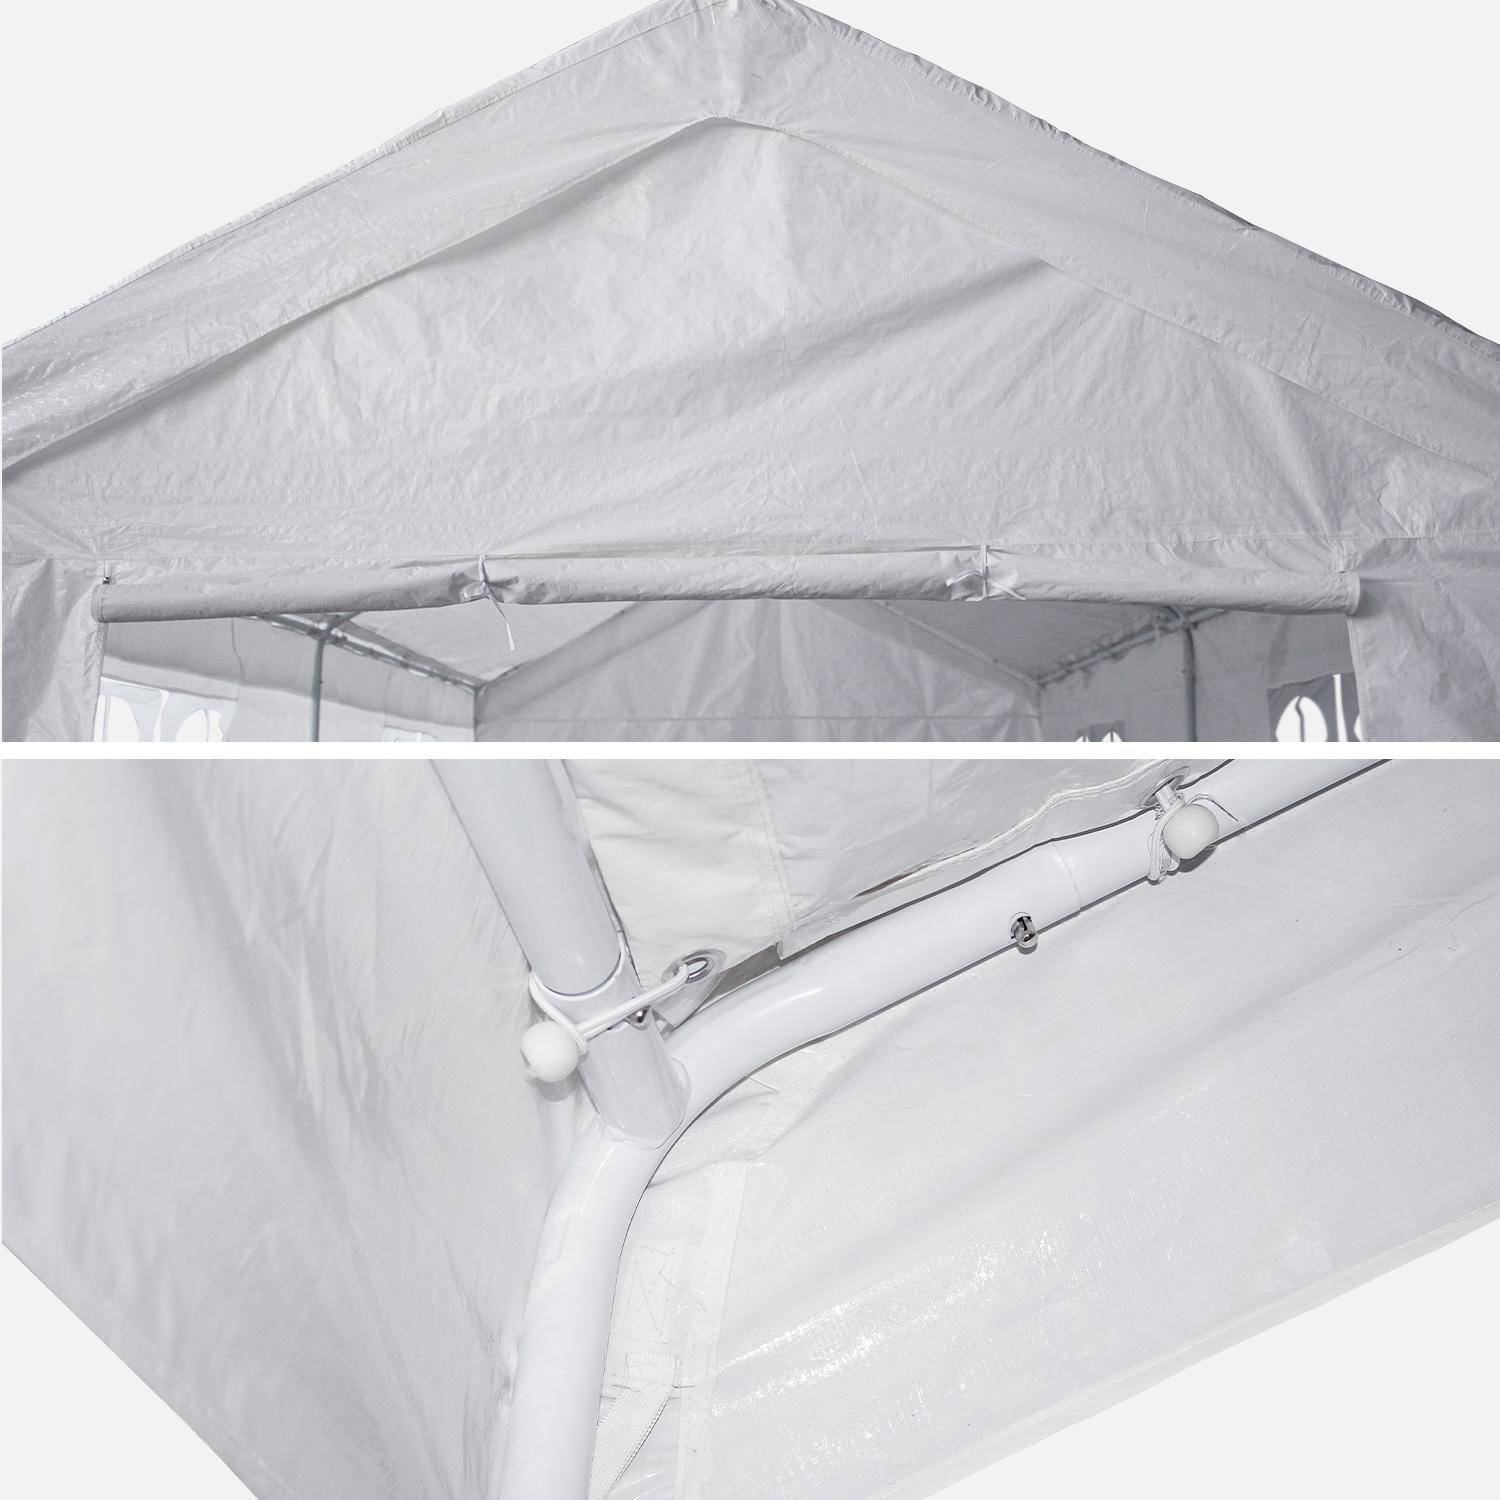 Tenda de festa - Burdigala 3x9m - Branca, conectores metálicos, tenda de jardim ideal para utilizar como pavilhão, pérgola, tenda ou caramanchão Photo5